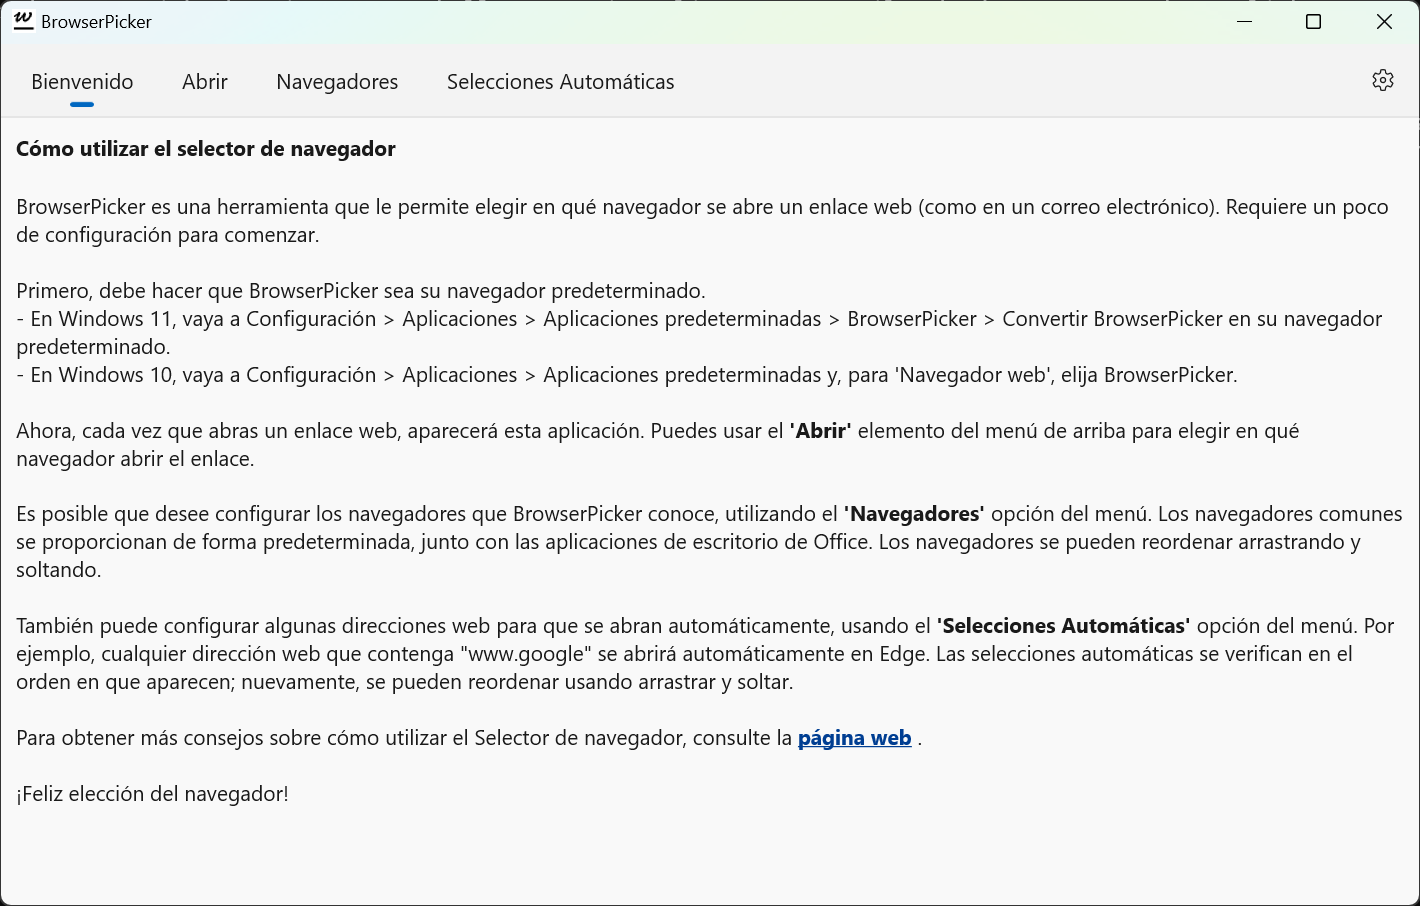 BrowserPicker: página de Bienvenida, con instrucciones básicas de uso.